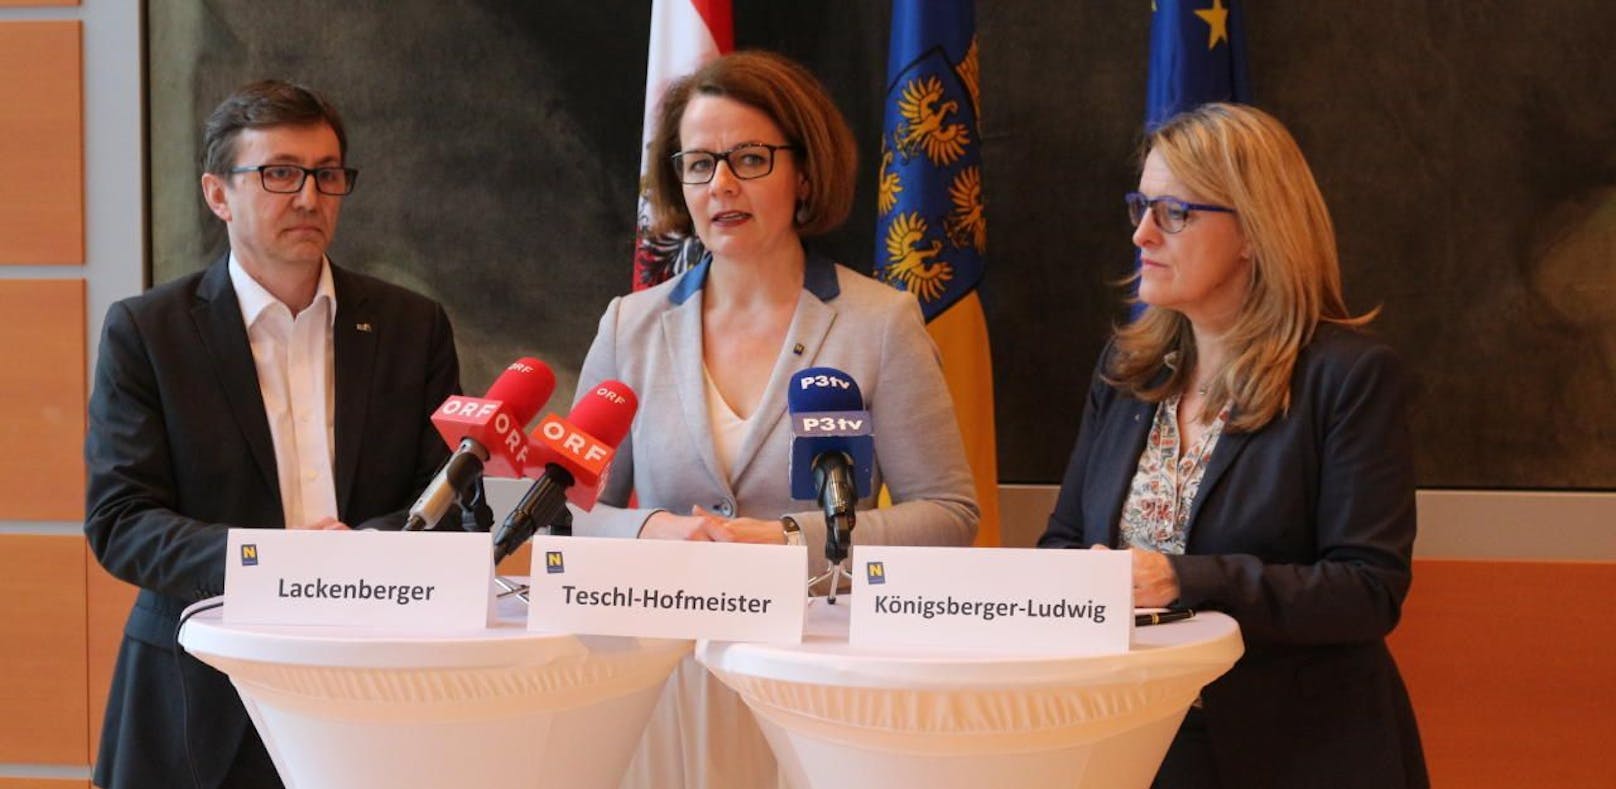 Landesrätin Christiane Teschl-Hofmeister (Mi.), Geschäftsführer Michael Lackenberger (l.) und Landesrätin Ulrike Königsberger-Ludwig (r.) präsentierten die Jahresbilanz 2018 der NÖ Schuldnerberatung.